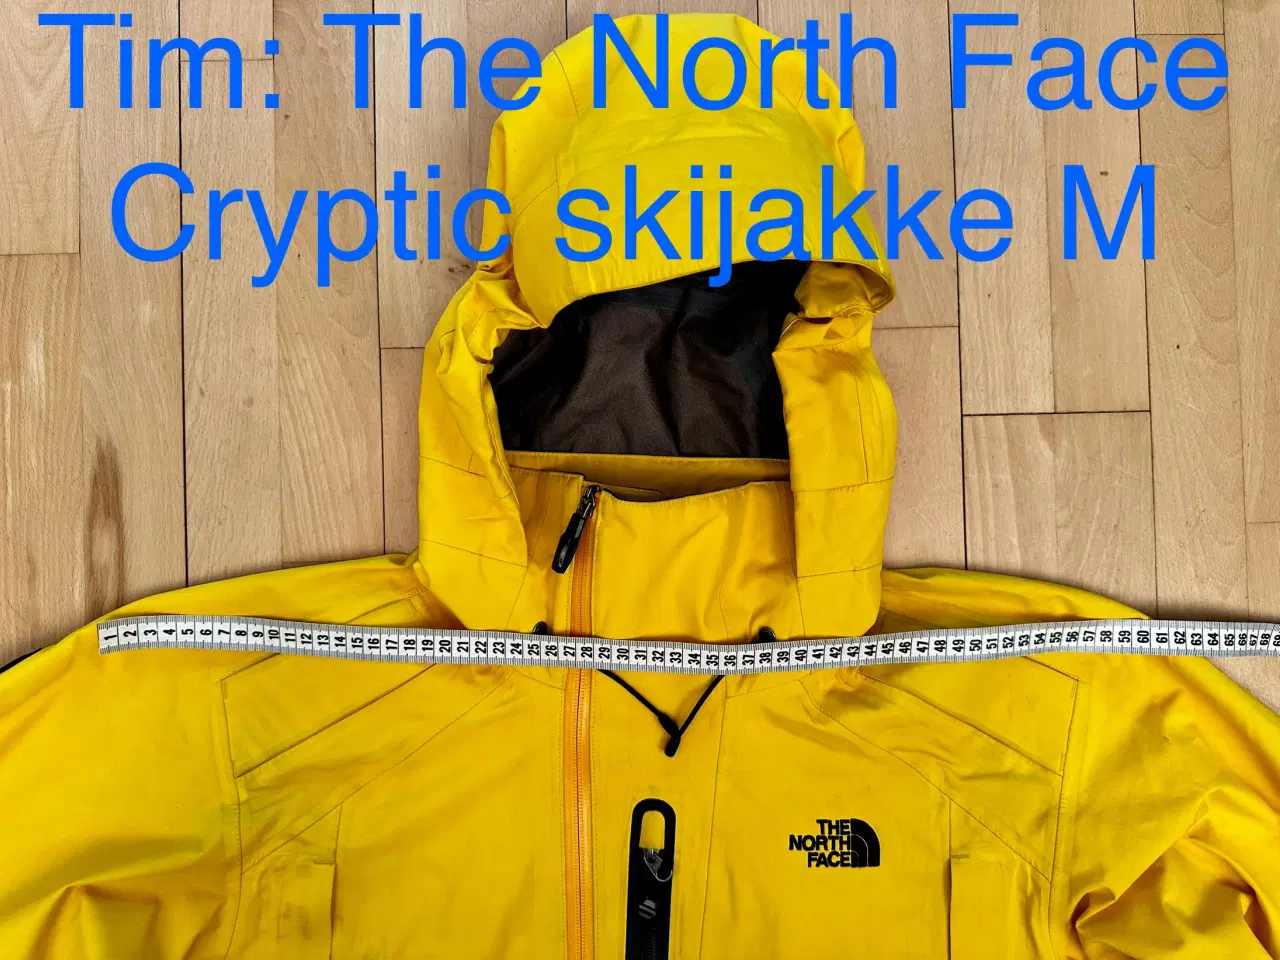 Billede 7 - The North Face Cryptic skijakke M 